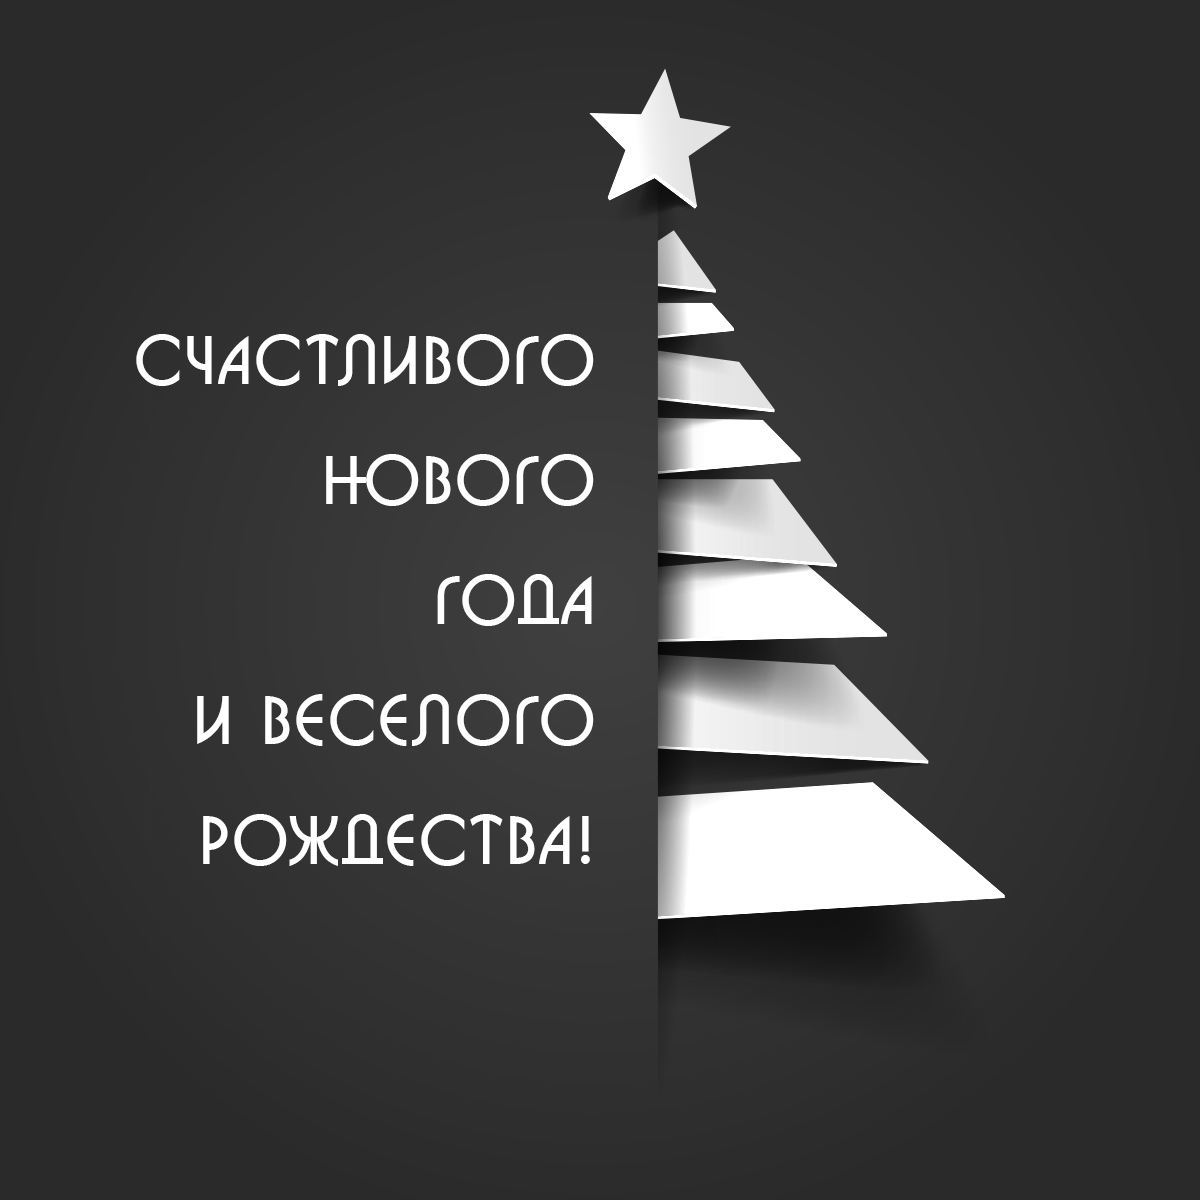 Черно-белая стильная картинка с Новым Годом и Рождеством ёлка со звездой.